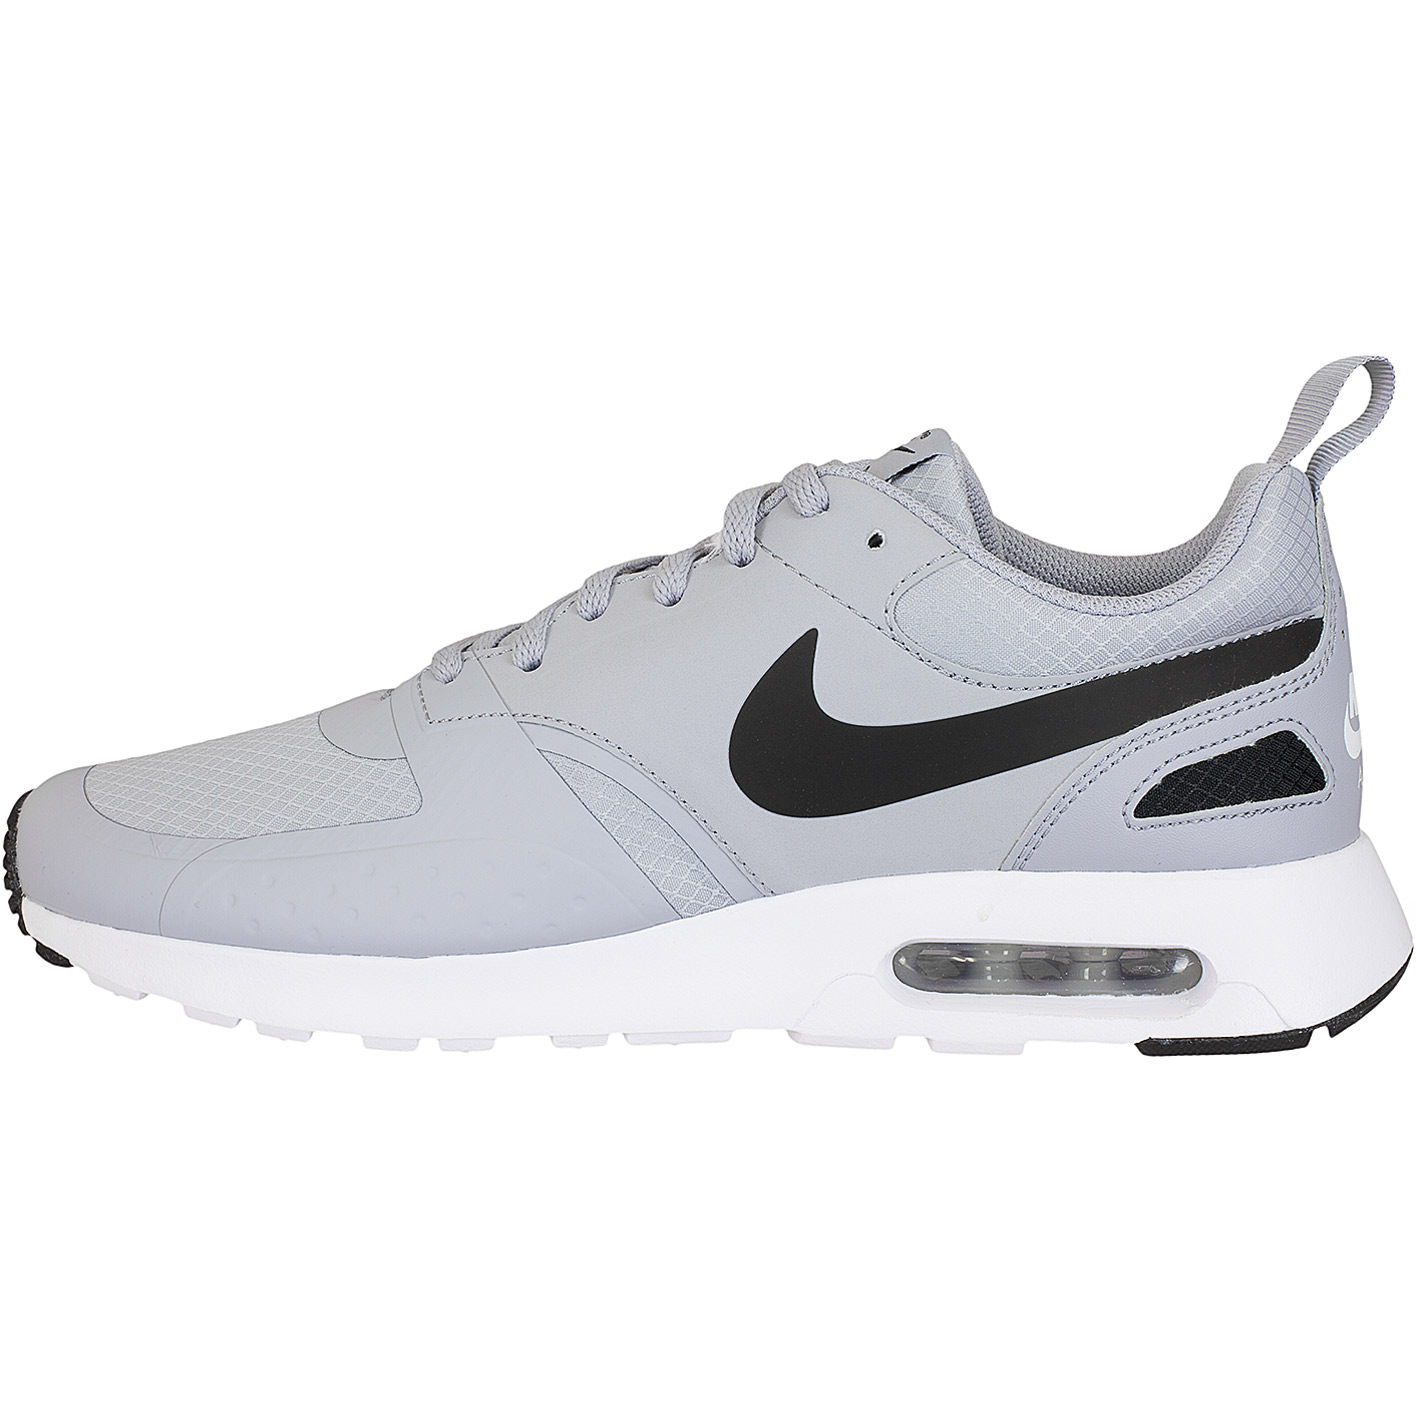 ☆ Nike Sneaker Air Max Vision SE grau/weiß - hier bestellen!